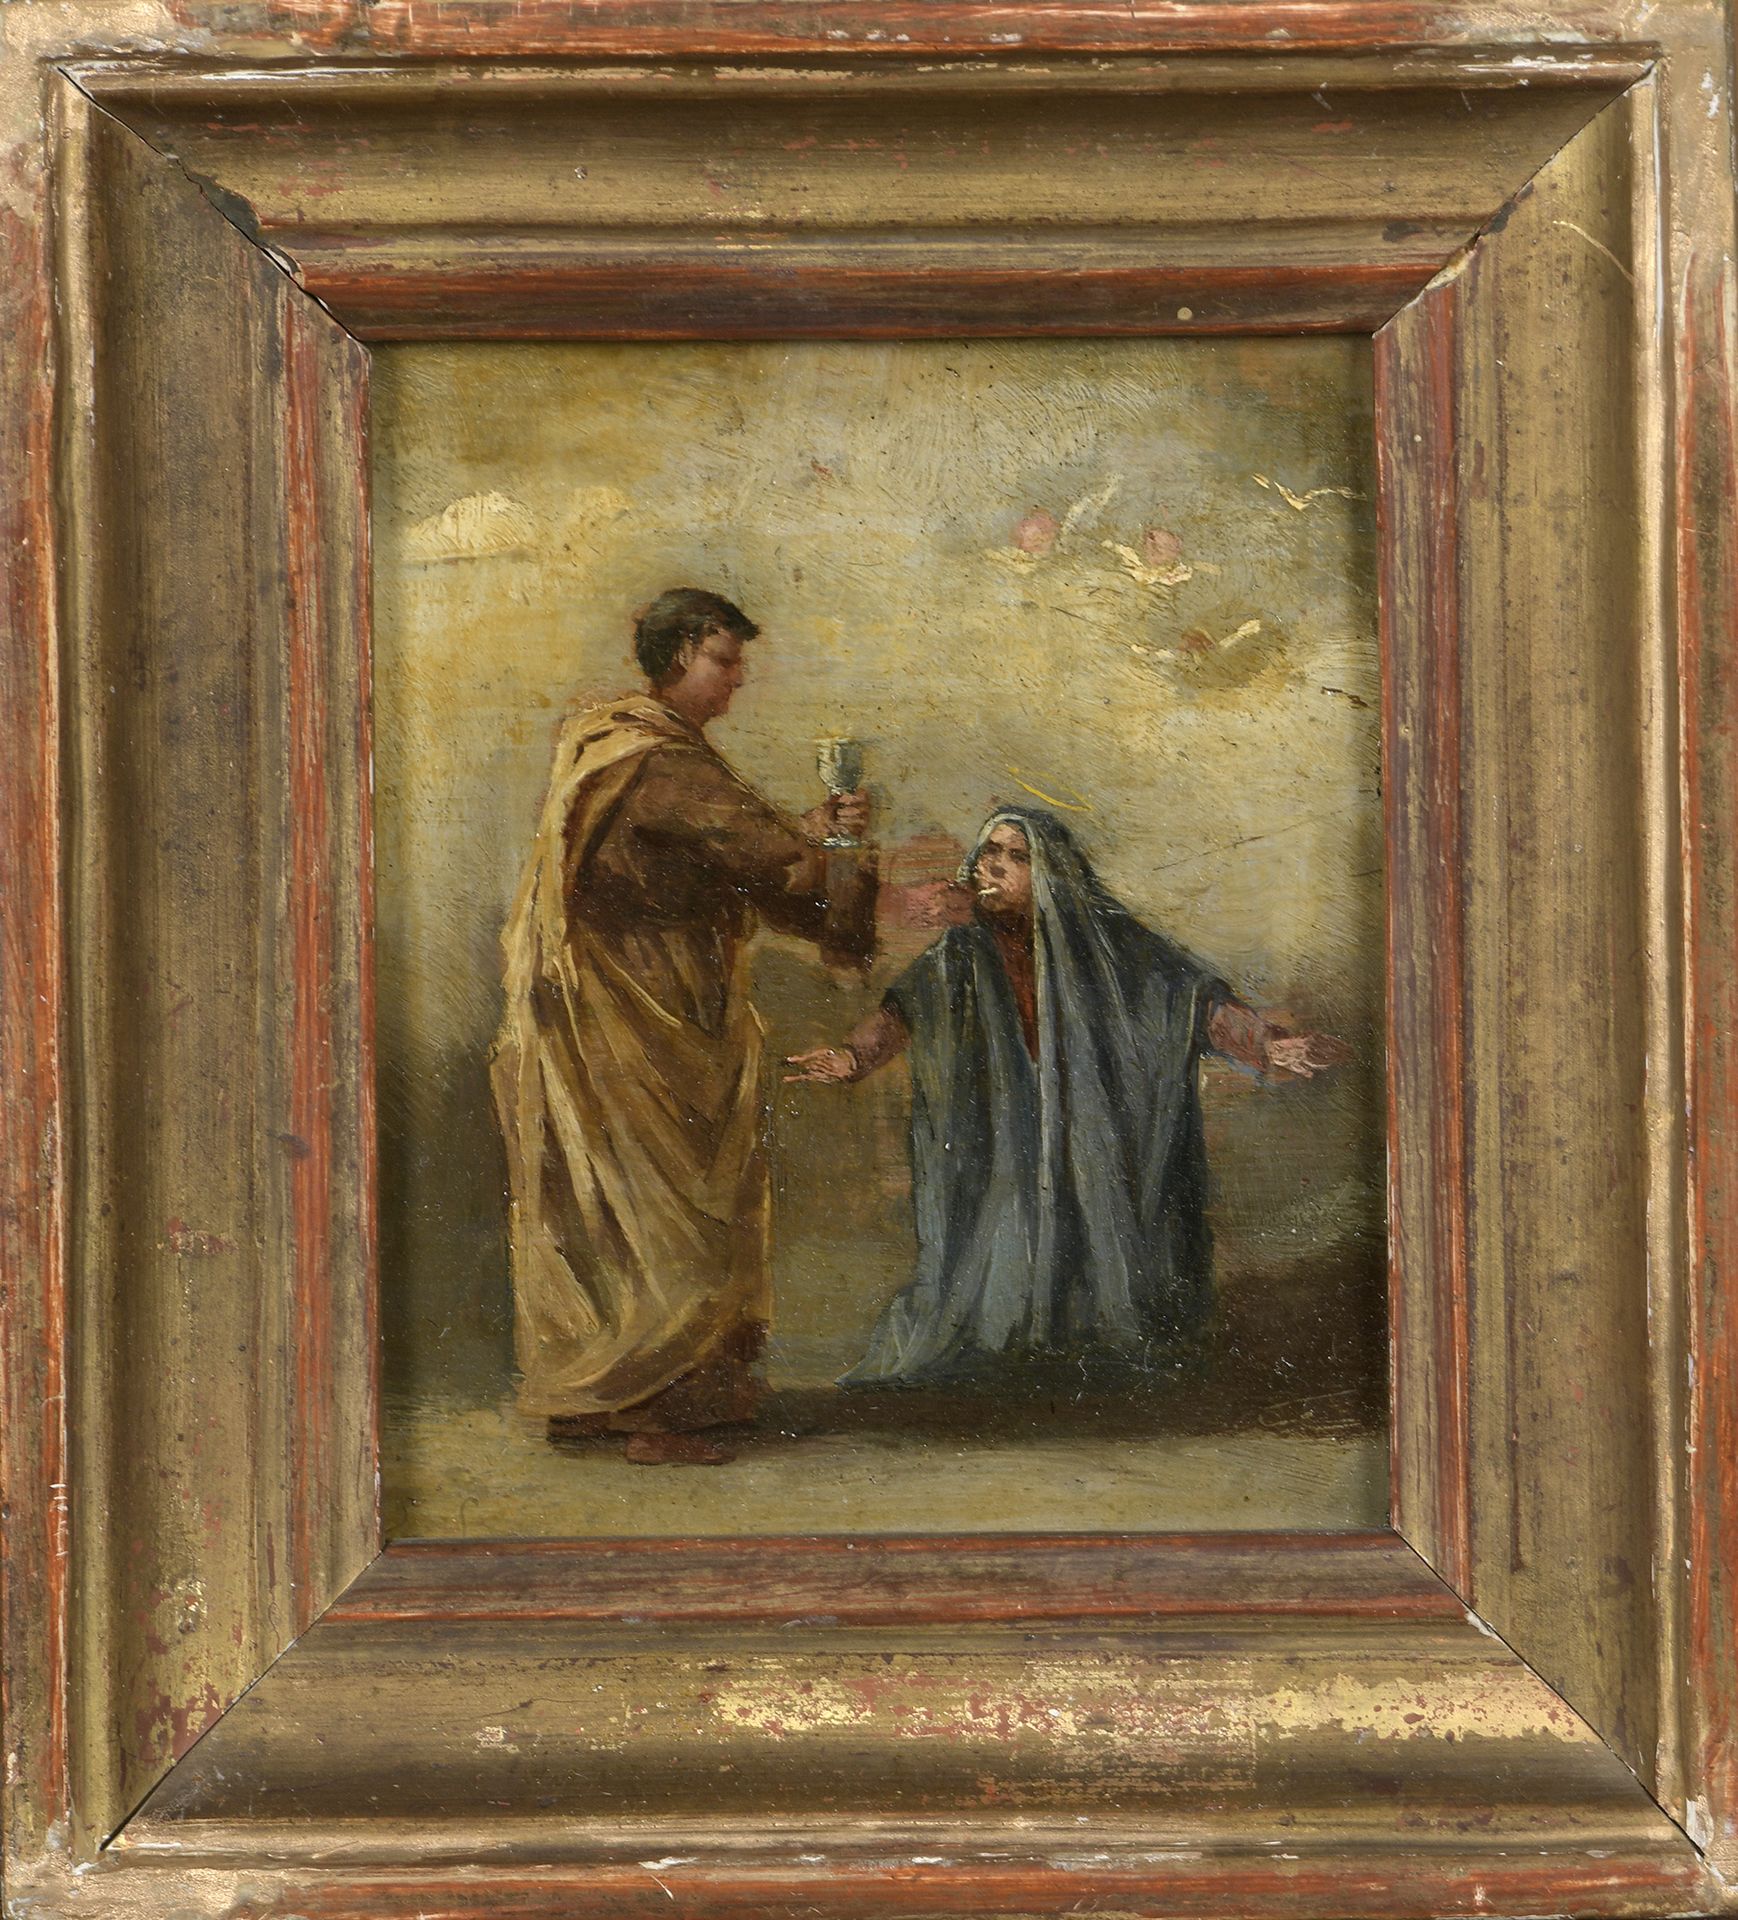 Null 归属Eugenio LUCAS VELASQUEZ(1817-1870)

圣体

油画，未署名。

背面印有献词。

10 x 8.5厘米